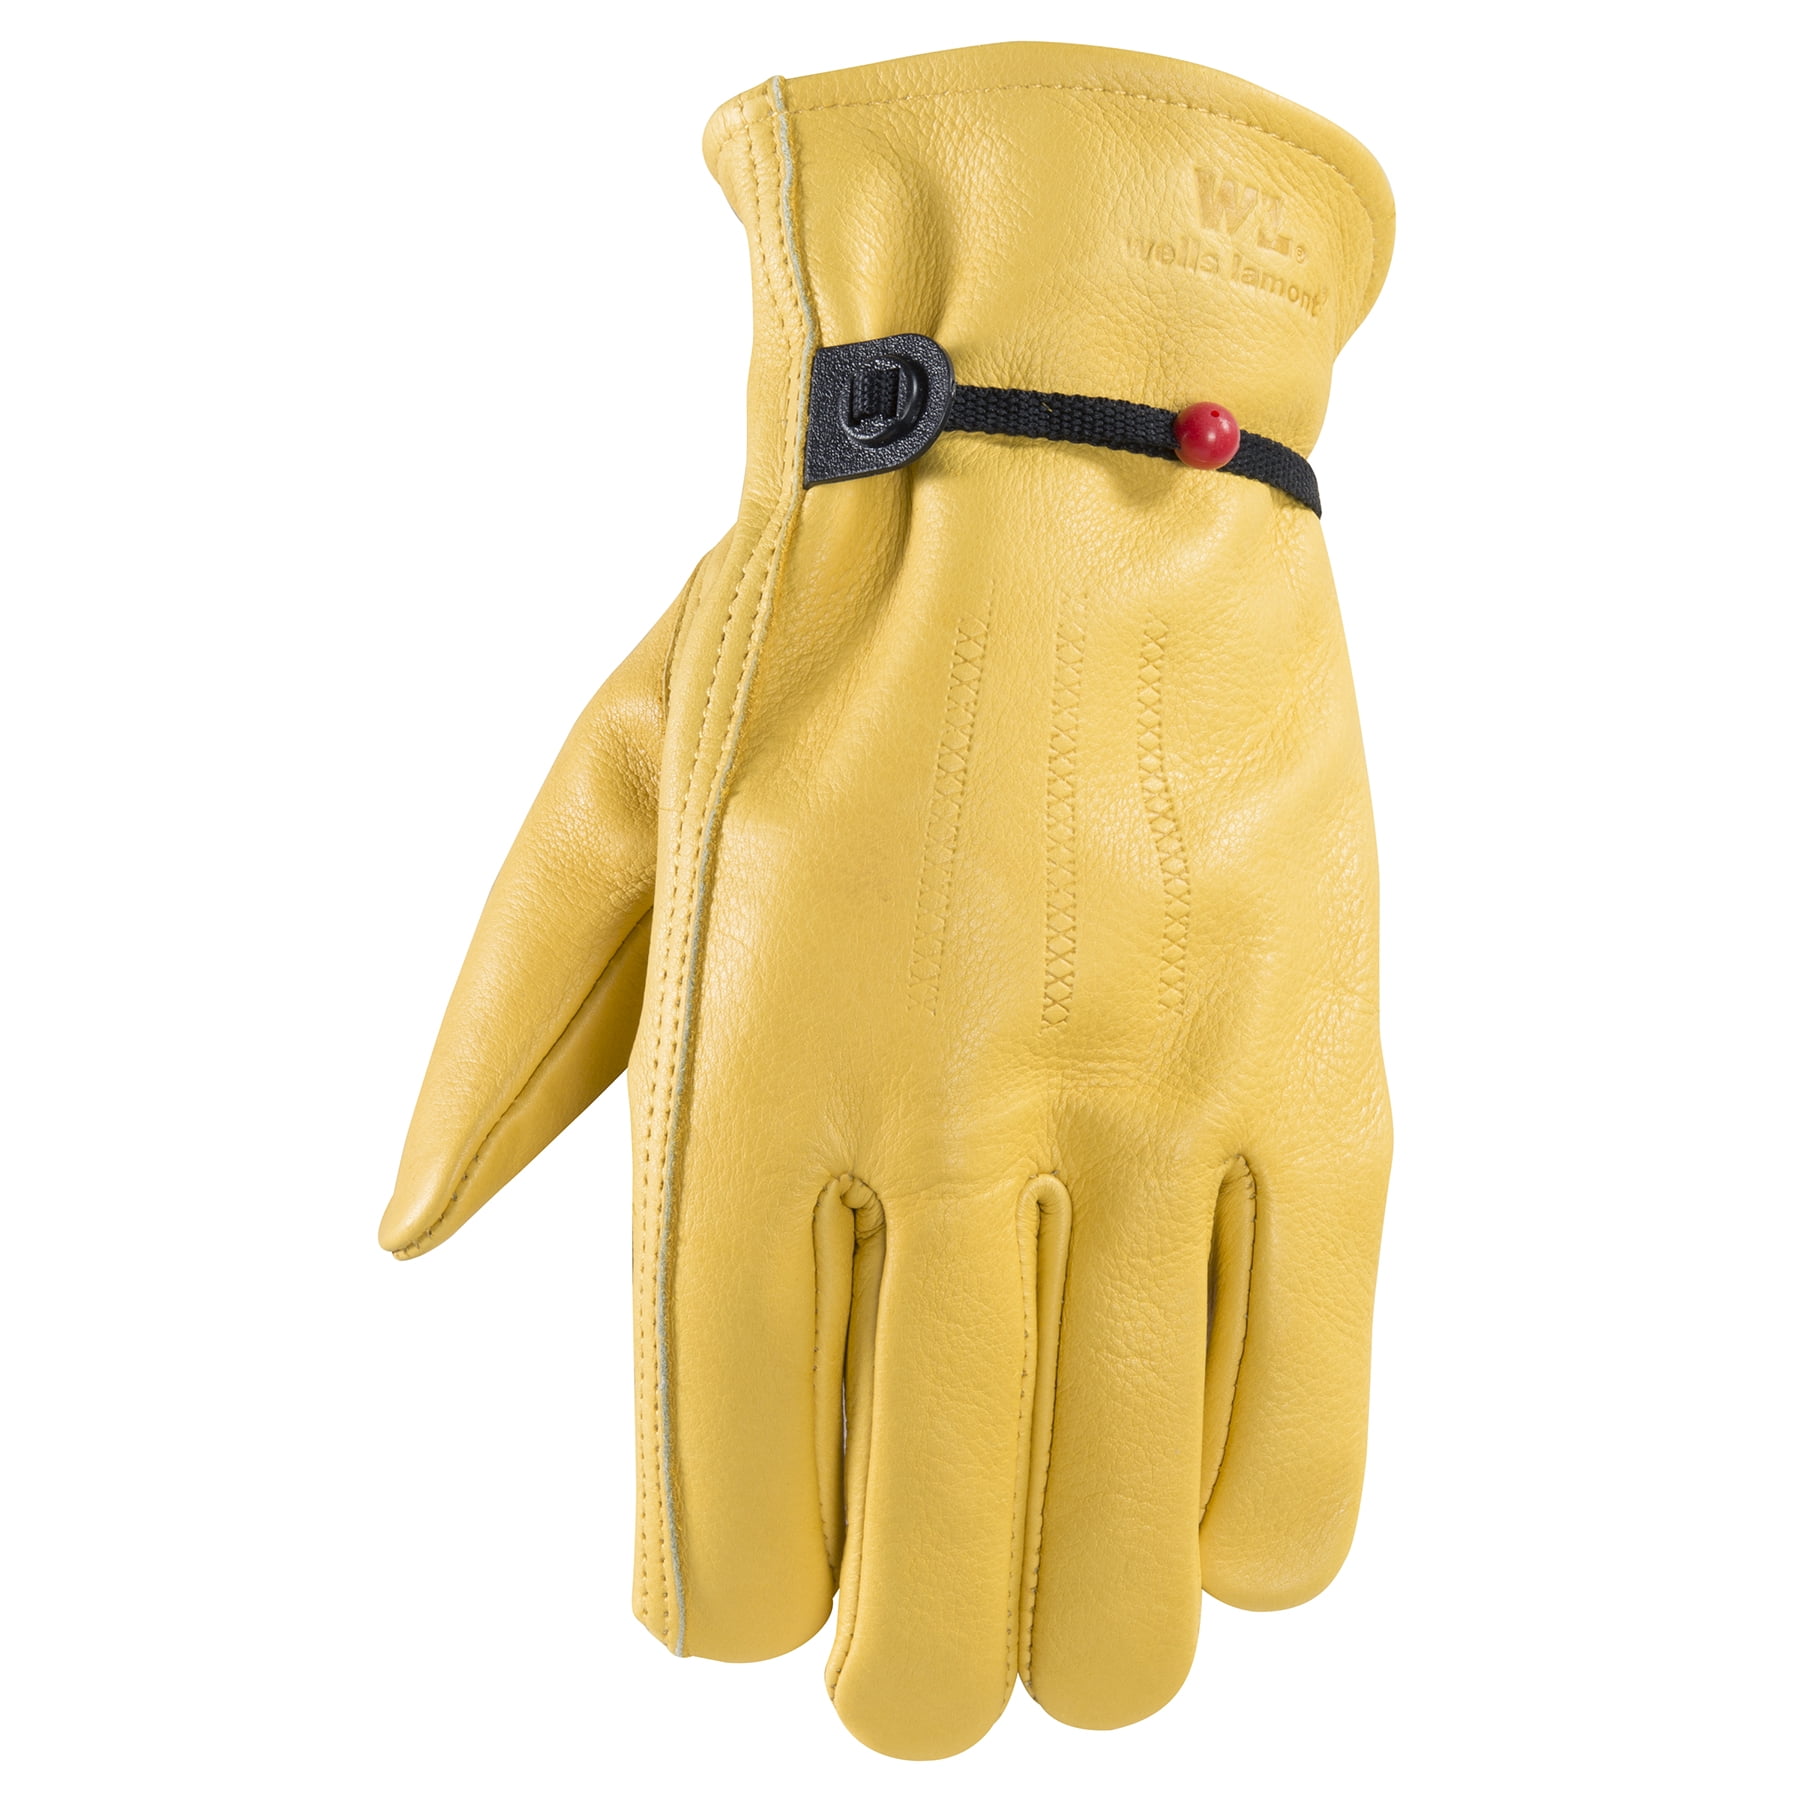 XXL-1132XX Wells Lamont Work & Home Heavy Duty Cowhide Gloves 